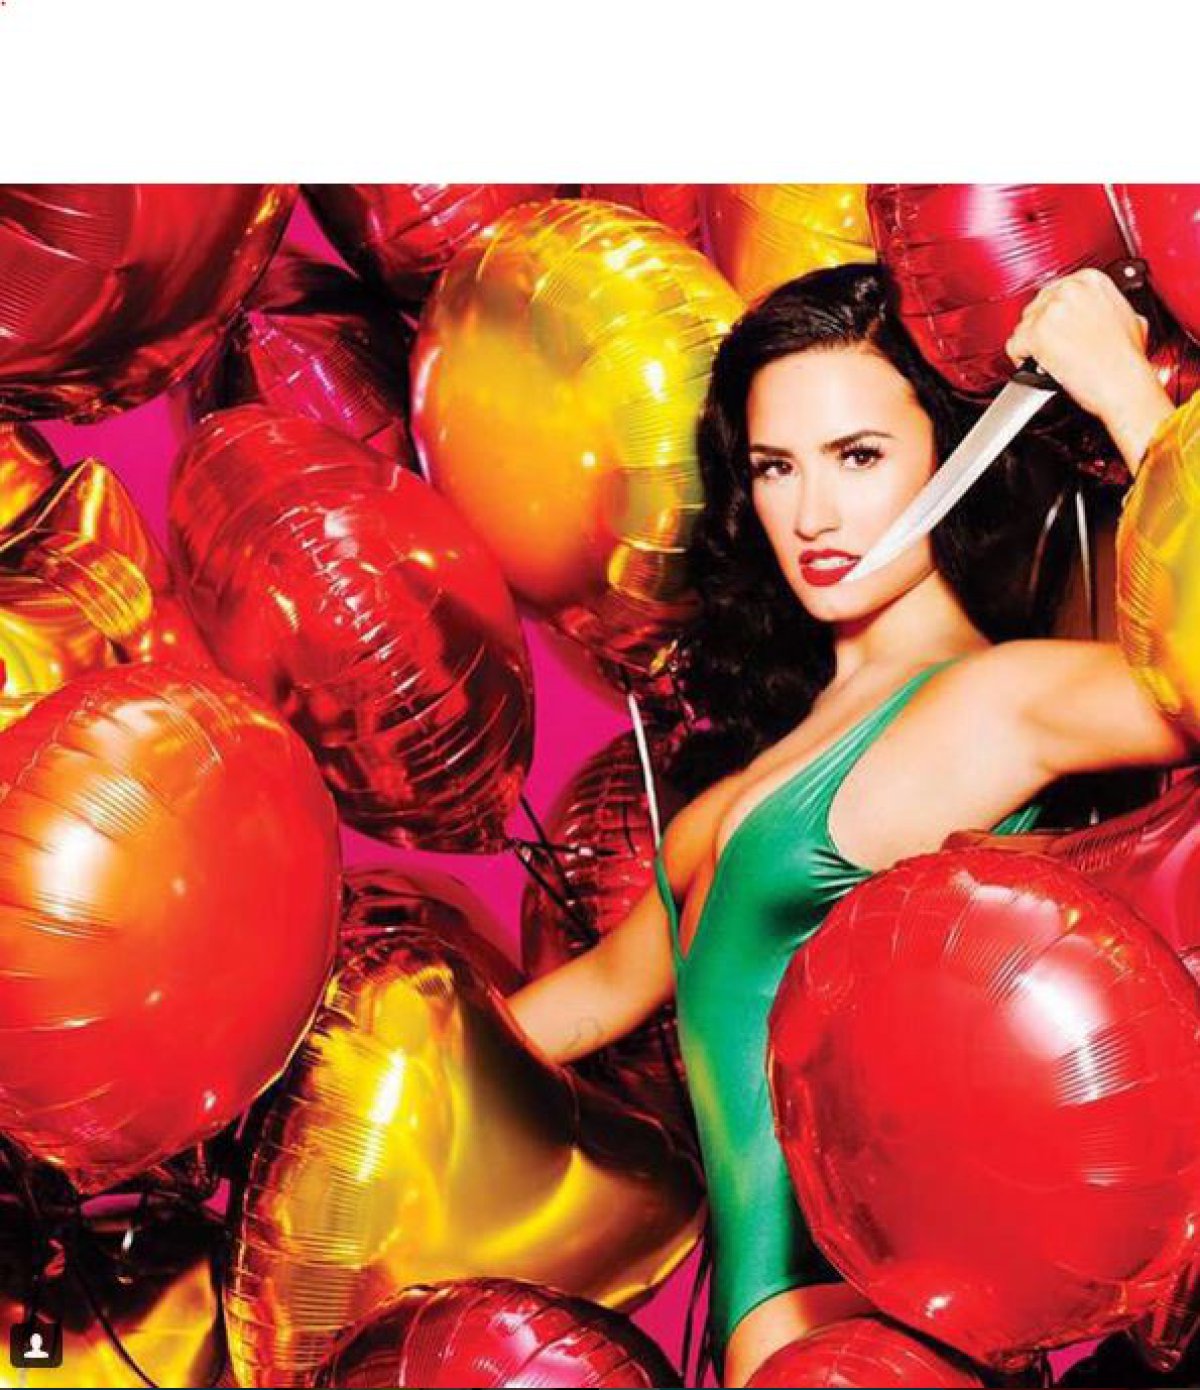 Sensual topless de Demi Lovato para la revista Complex